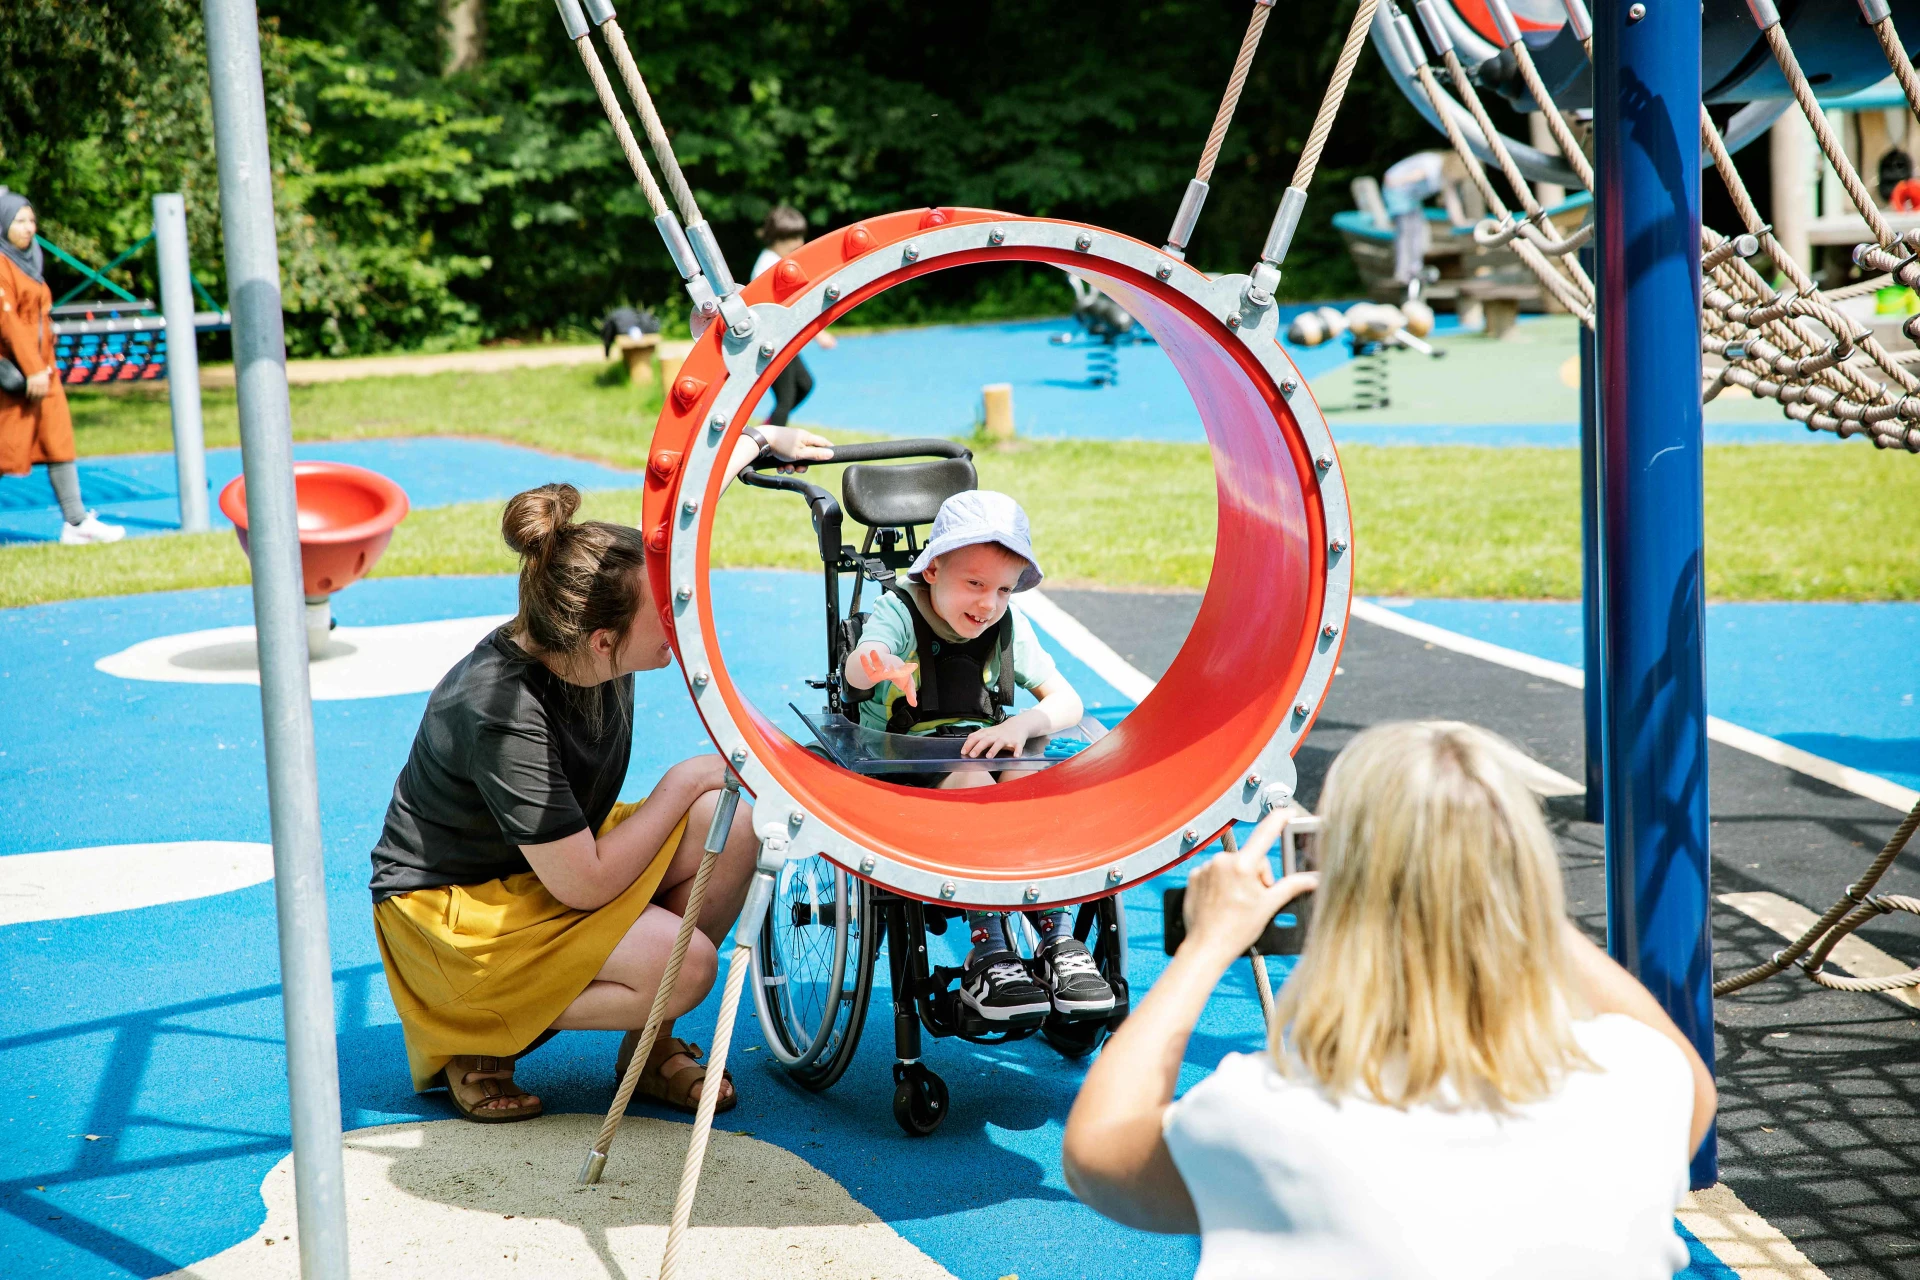 opiekun i chłopiec na wózku inwalidzkim bawiący się na placu zabaw